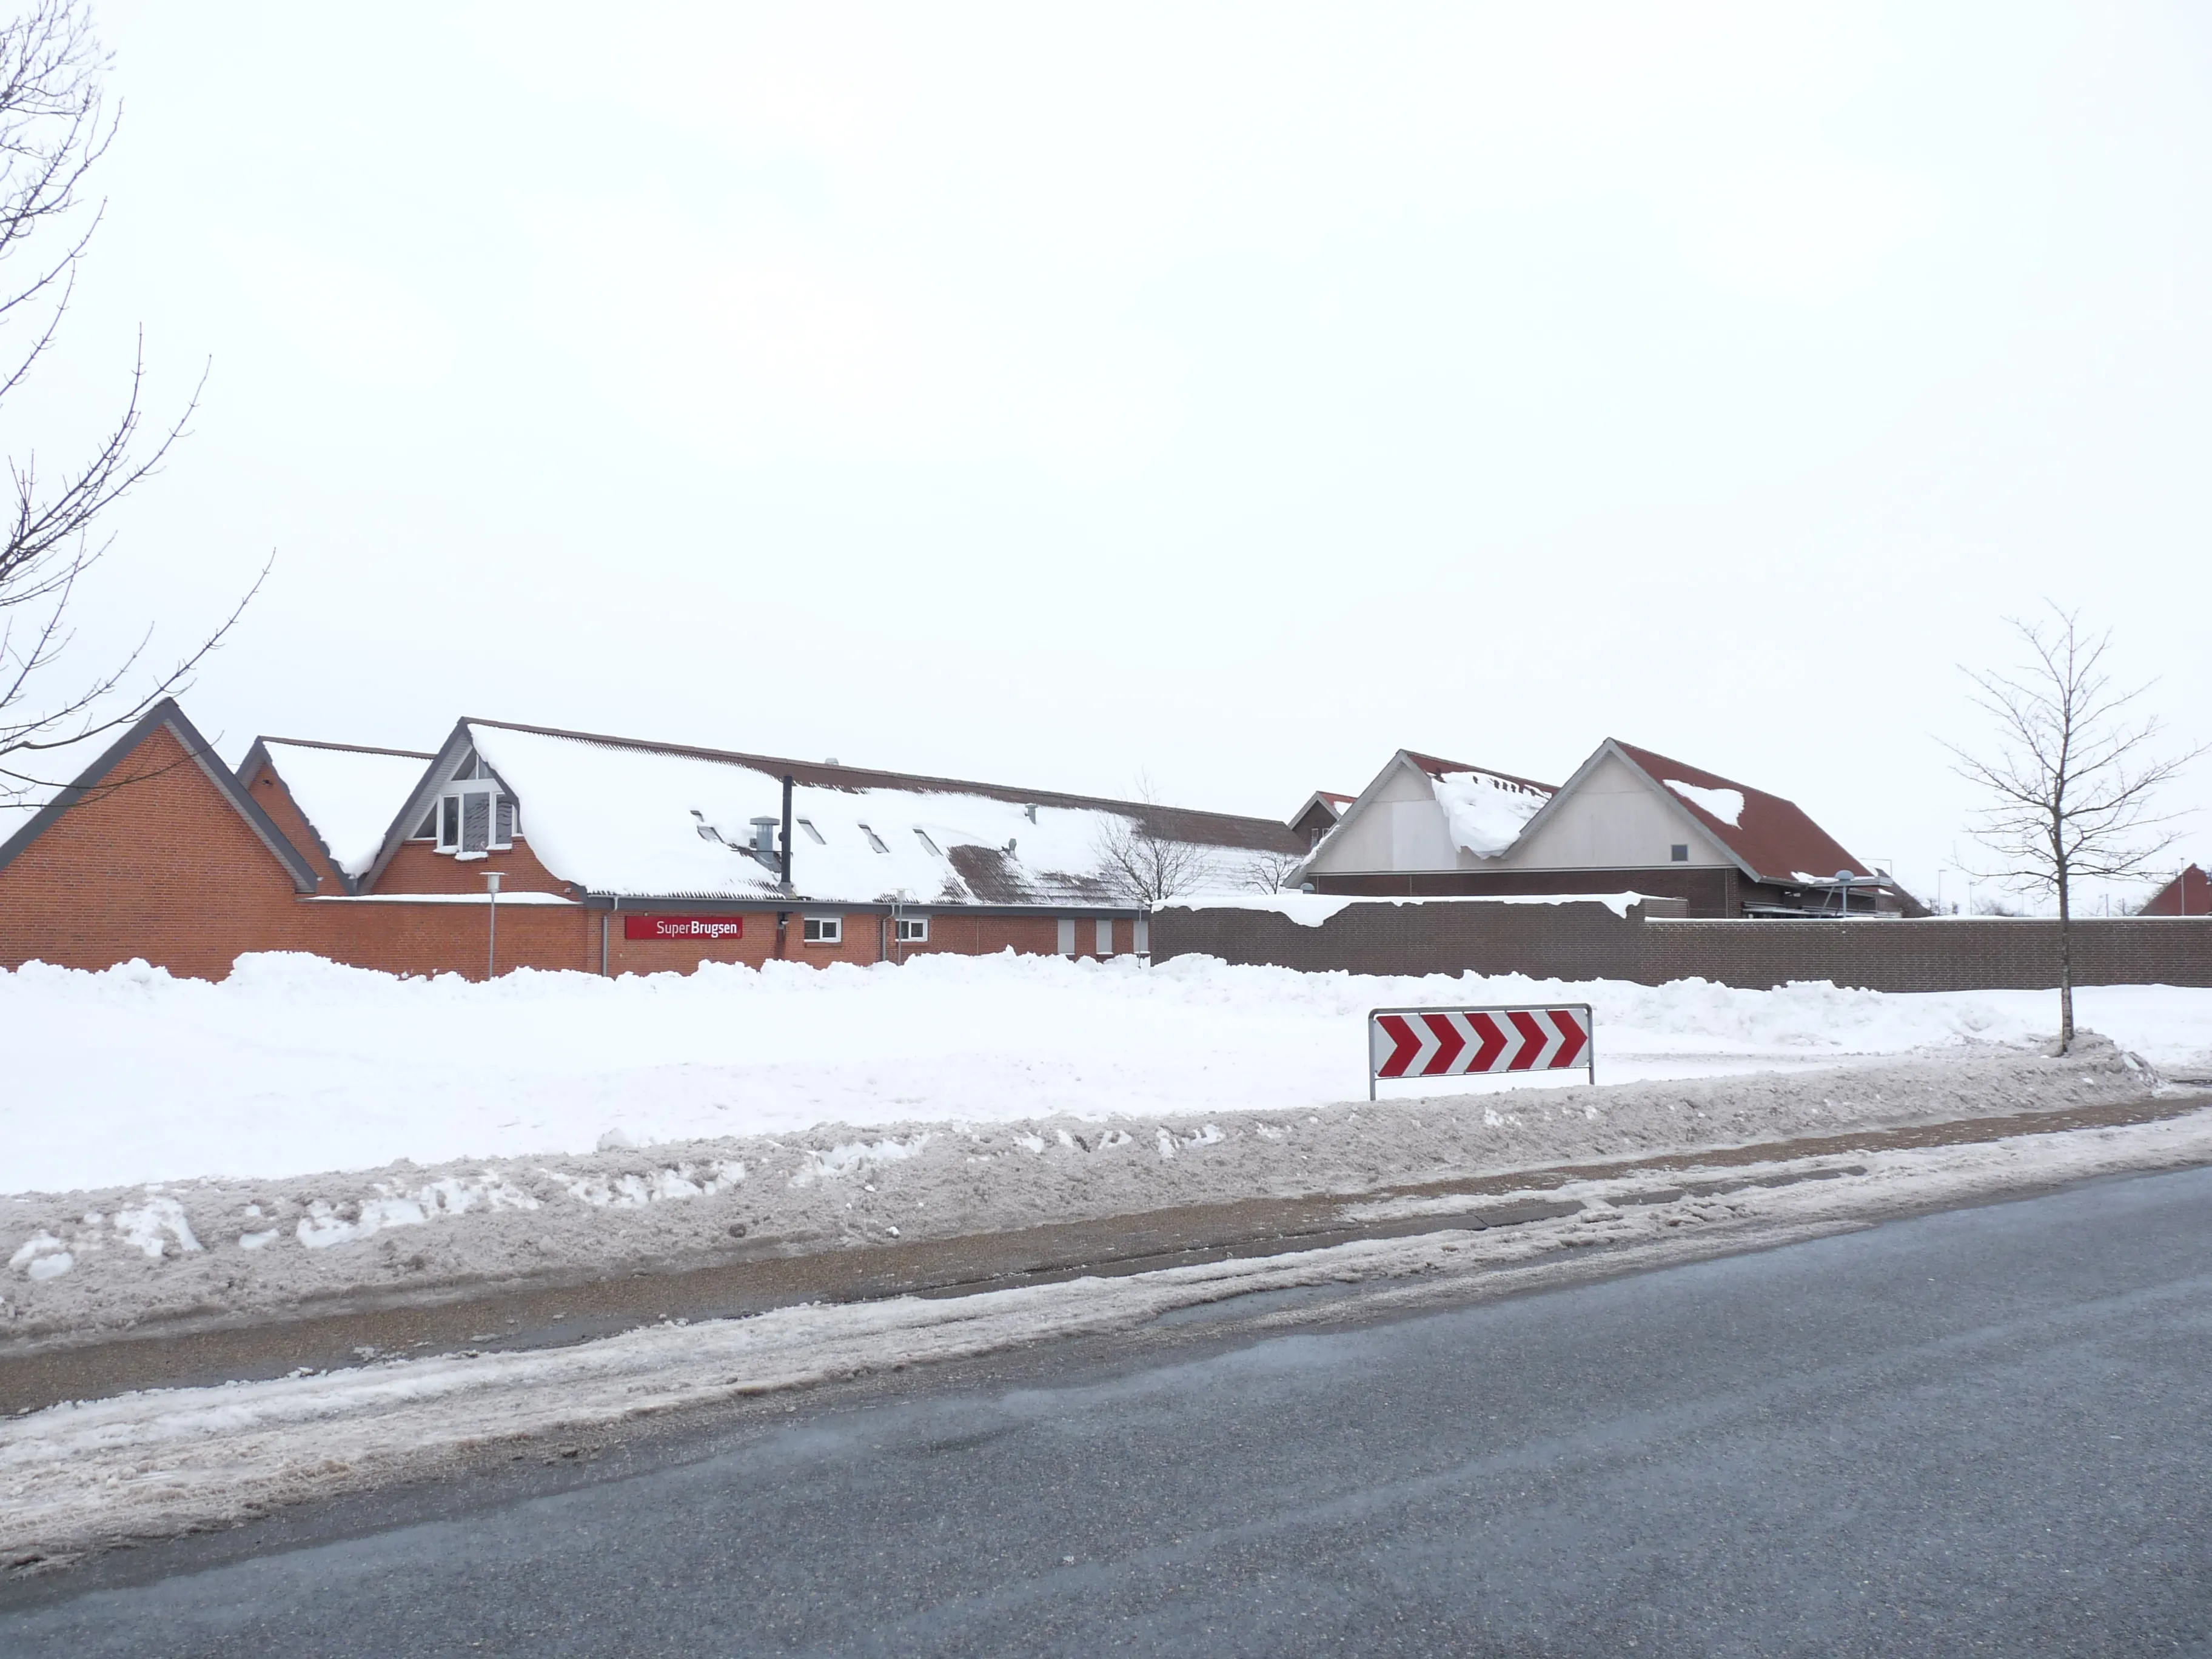 Billede af Brovst Station - Station er nedrevet, men Brovst Station har ligget her.